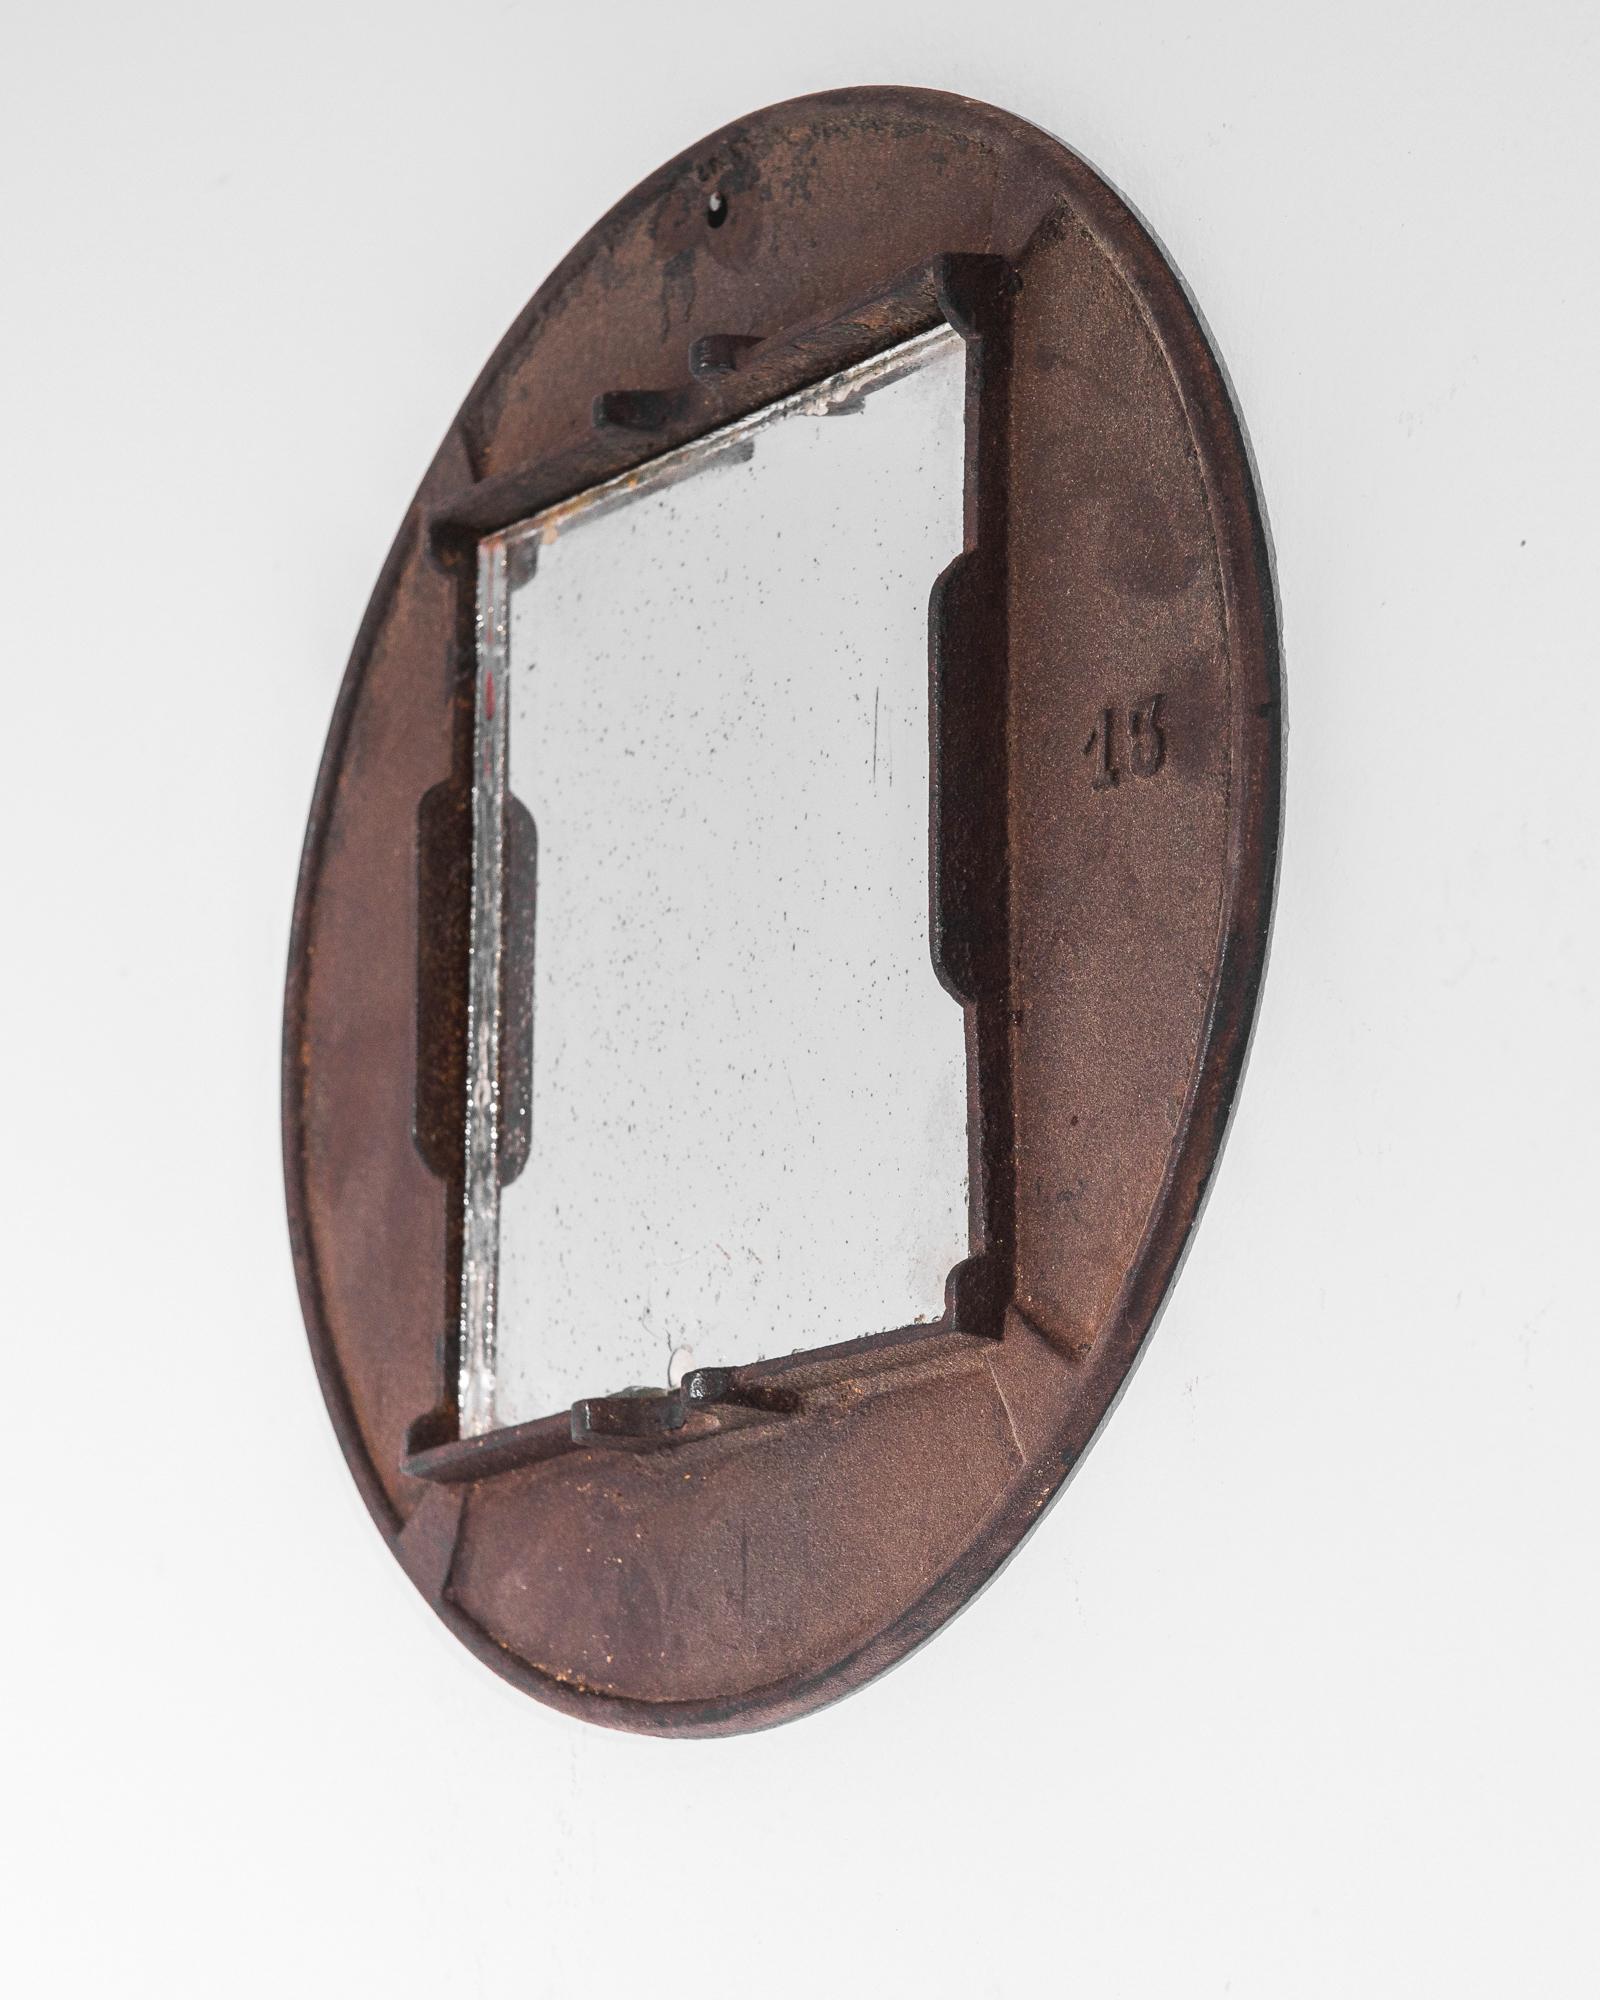 Ein Eisenspiegel aus dem Belgien der 1920er Jahre. Ein Zusammenspiel von Formen und Texturen schafft eine verwitterte industrielle Ästhetik: Ein rechteckiger Spiegel ist in einen runden Eisenrahmen eingelassen, der zu einem dunklen Burgunderrot